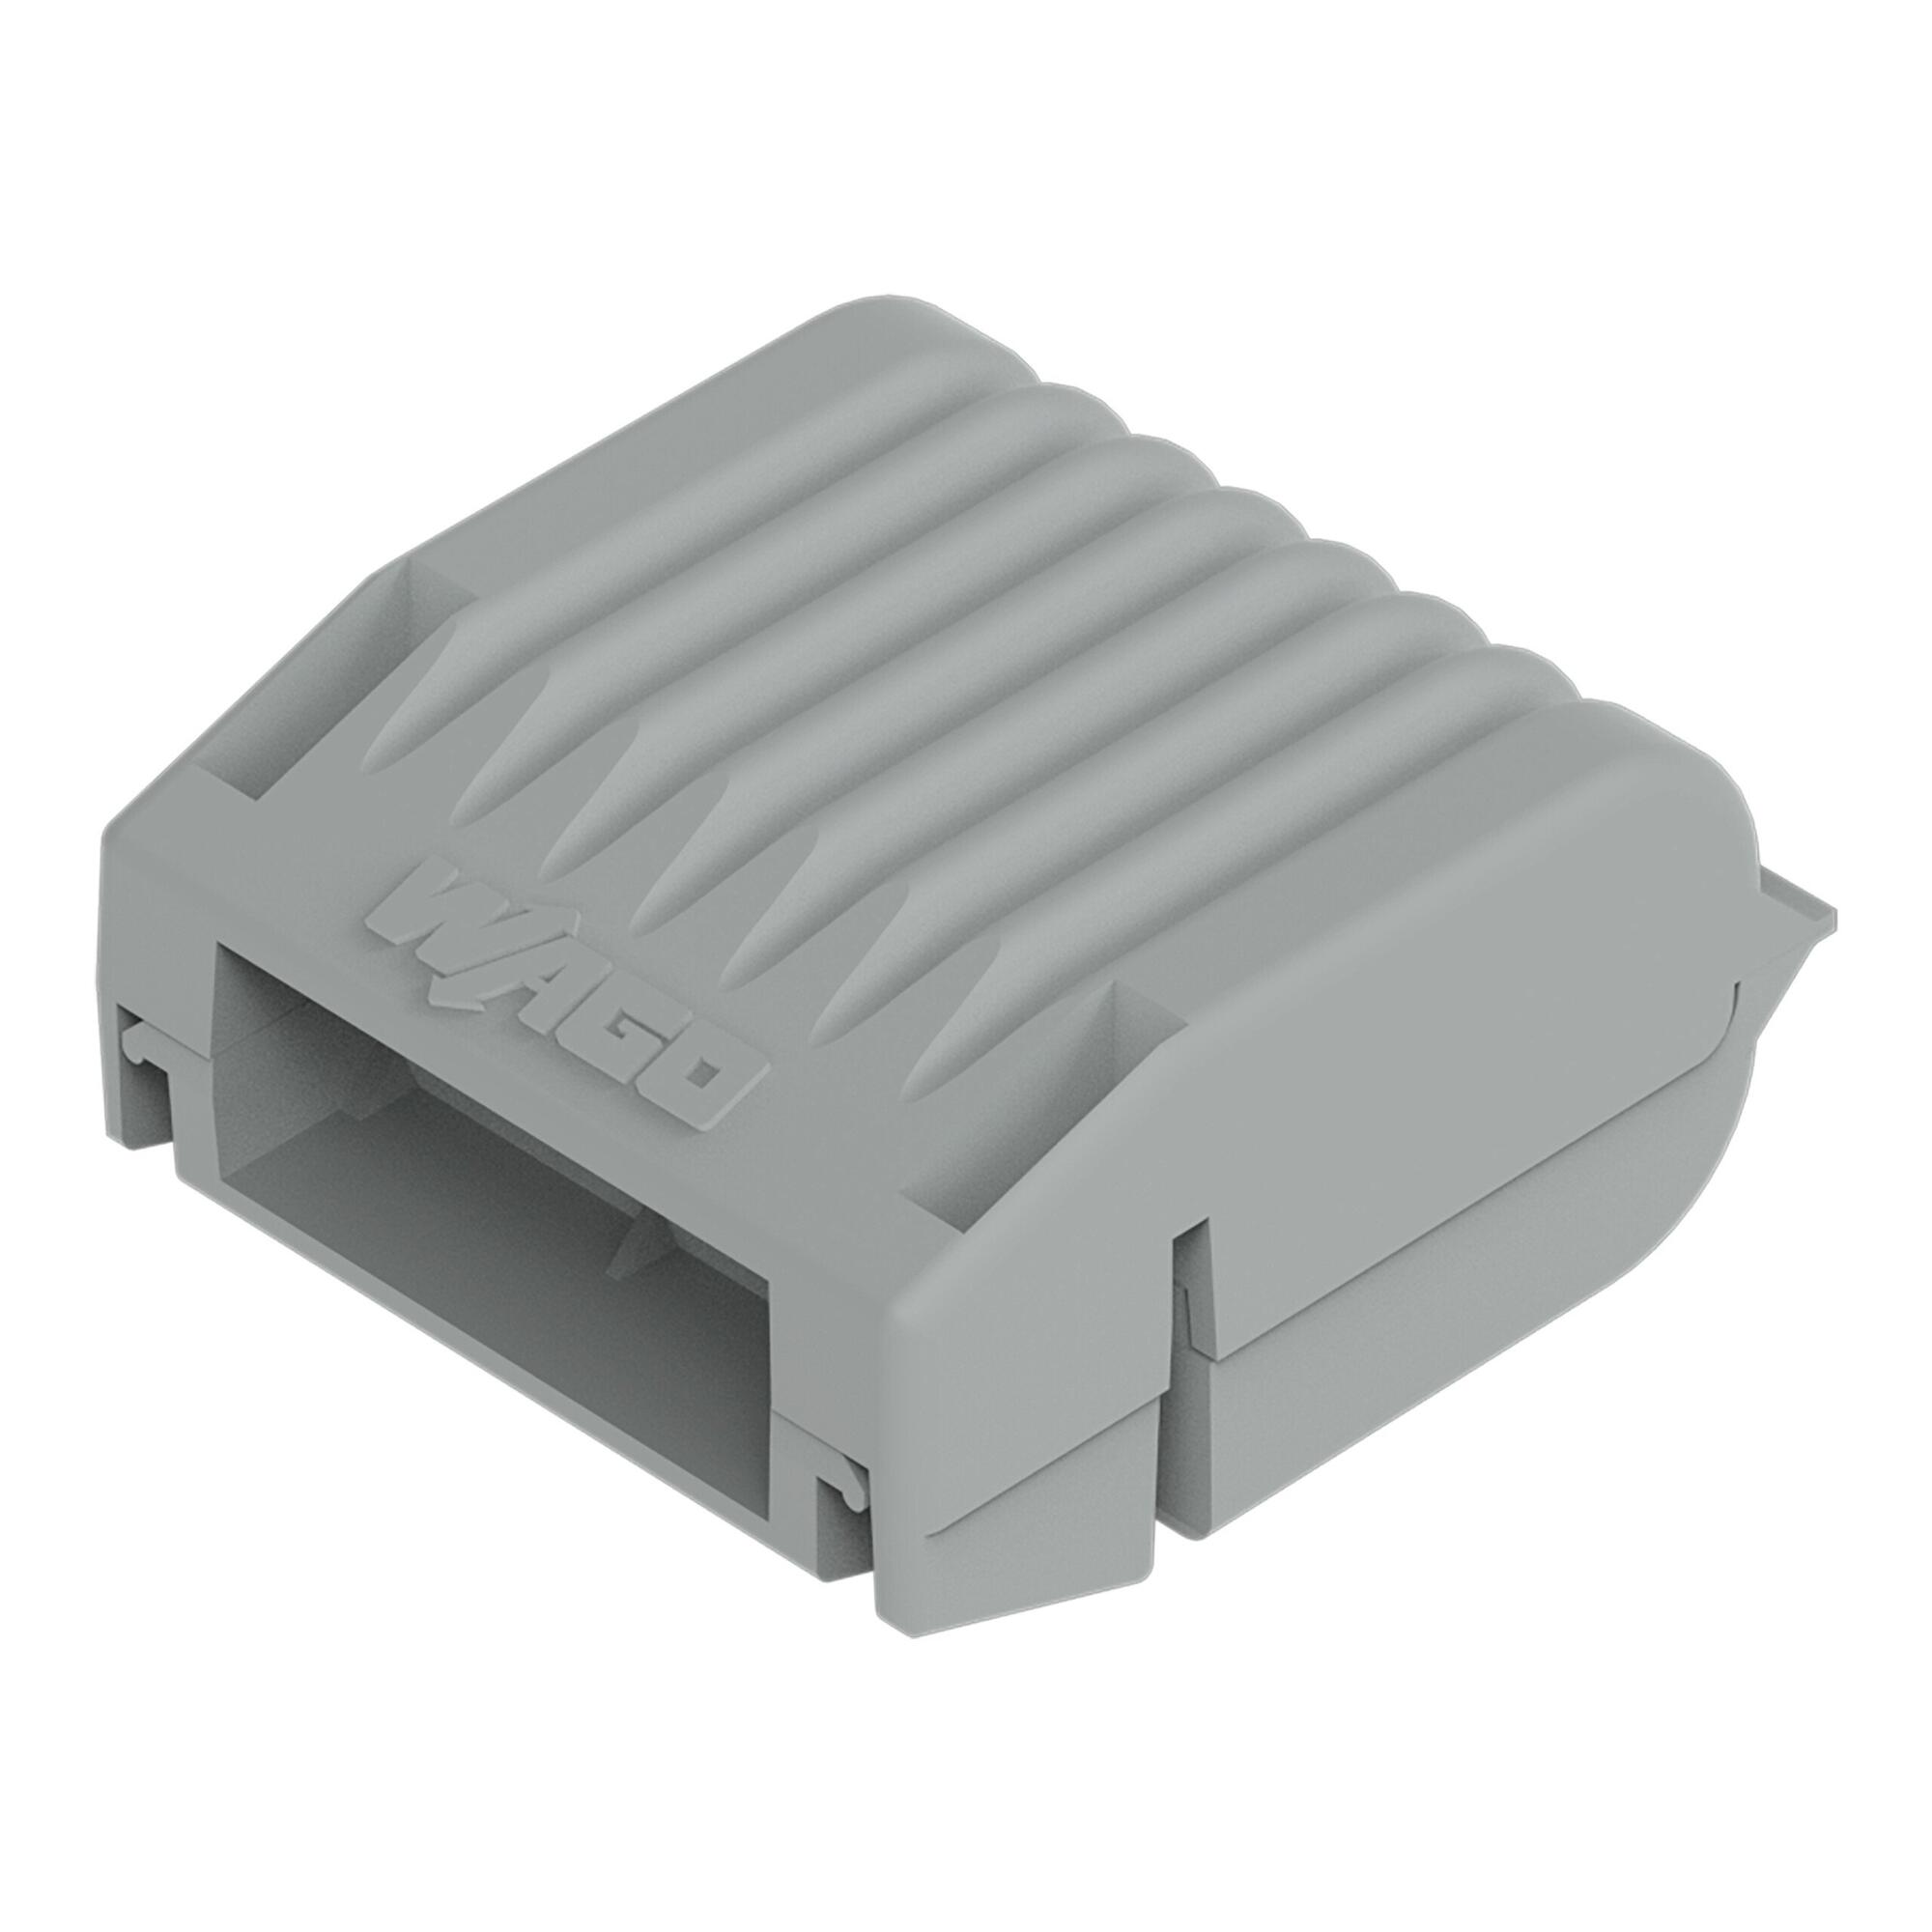 Gelbox; Derivación; para cables; con gel; Serie 221, 2x73; conectores hasta 4 mm² máx.; sin bornas de conexión; tamaño 1; gris